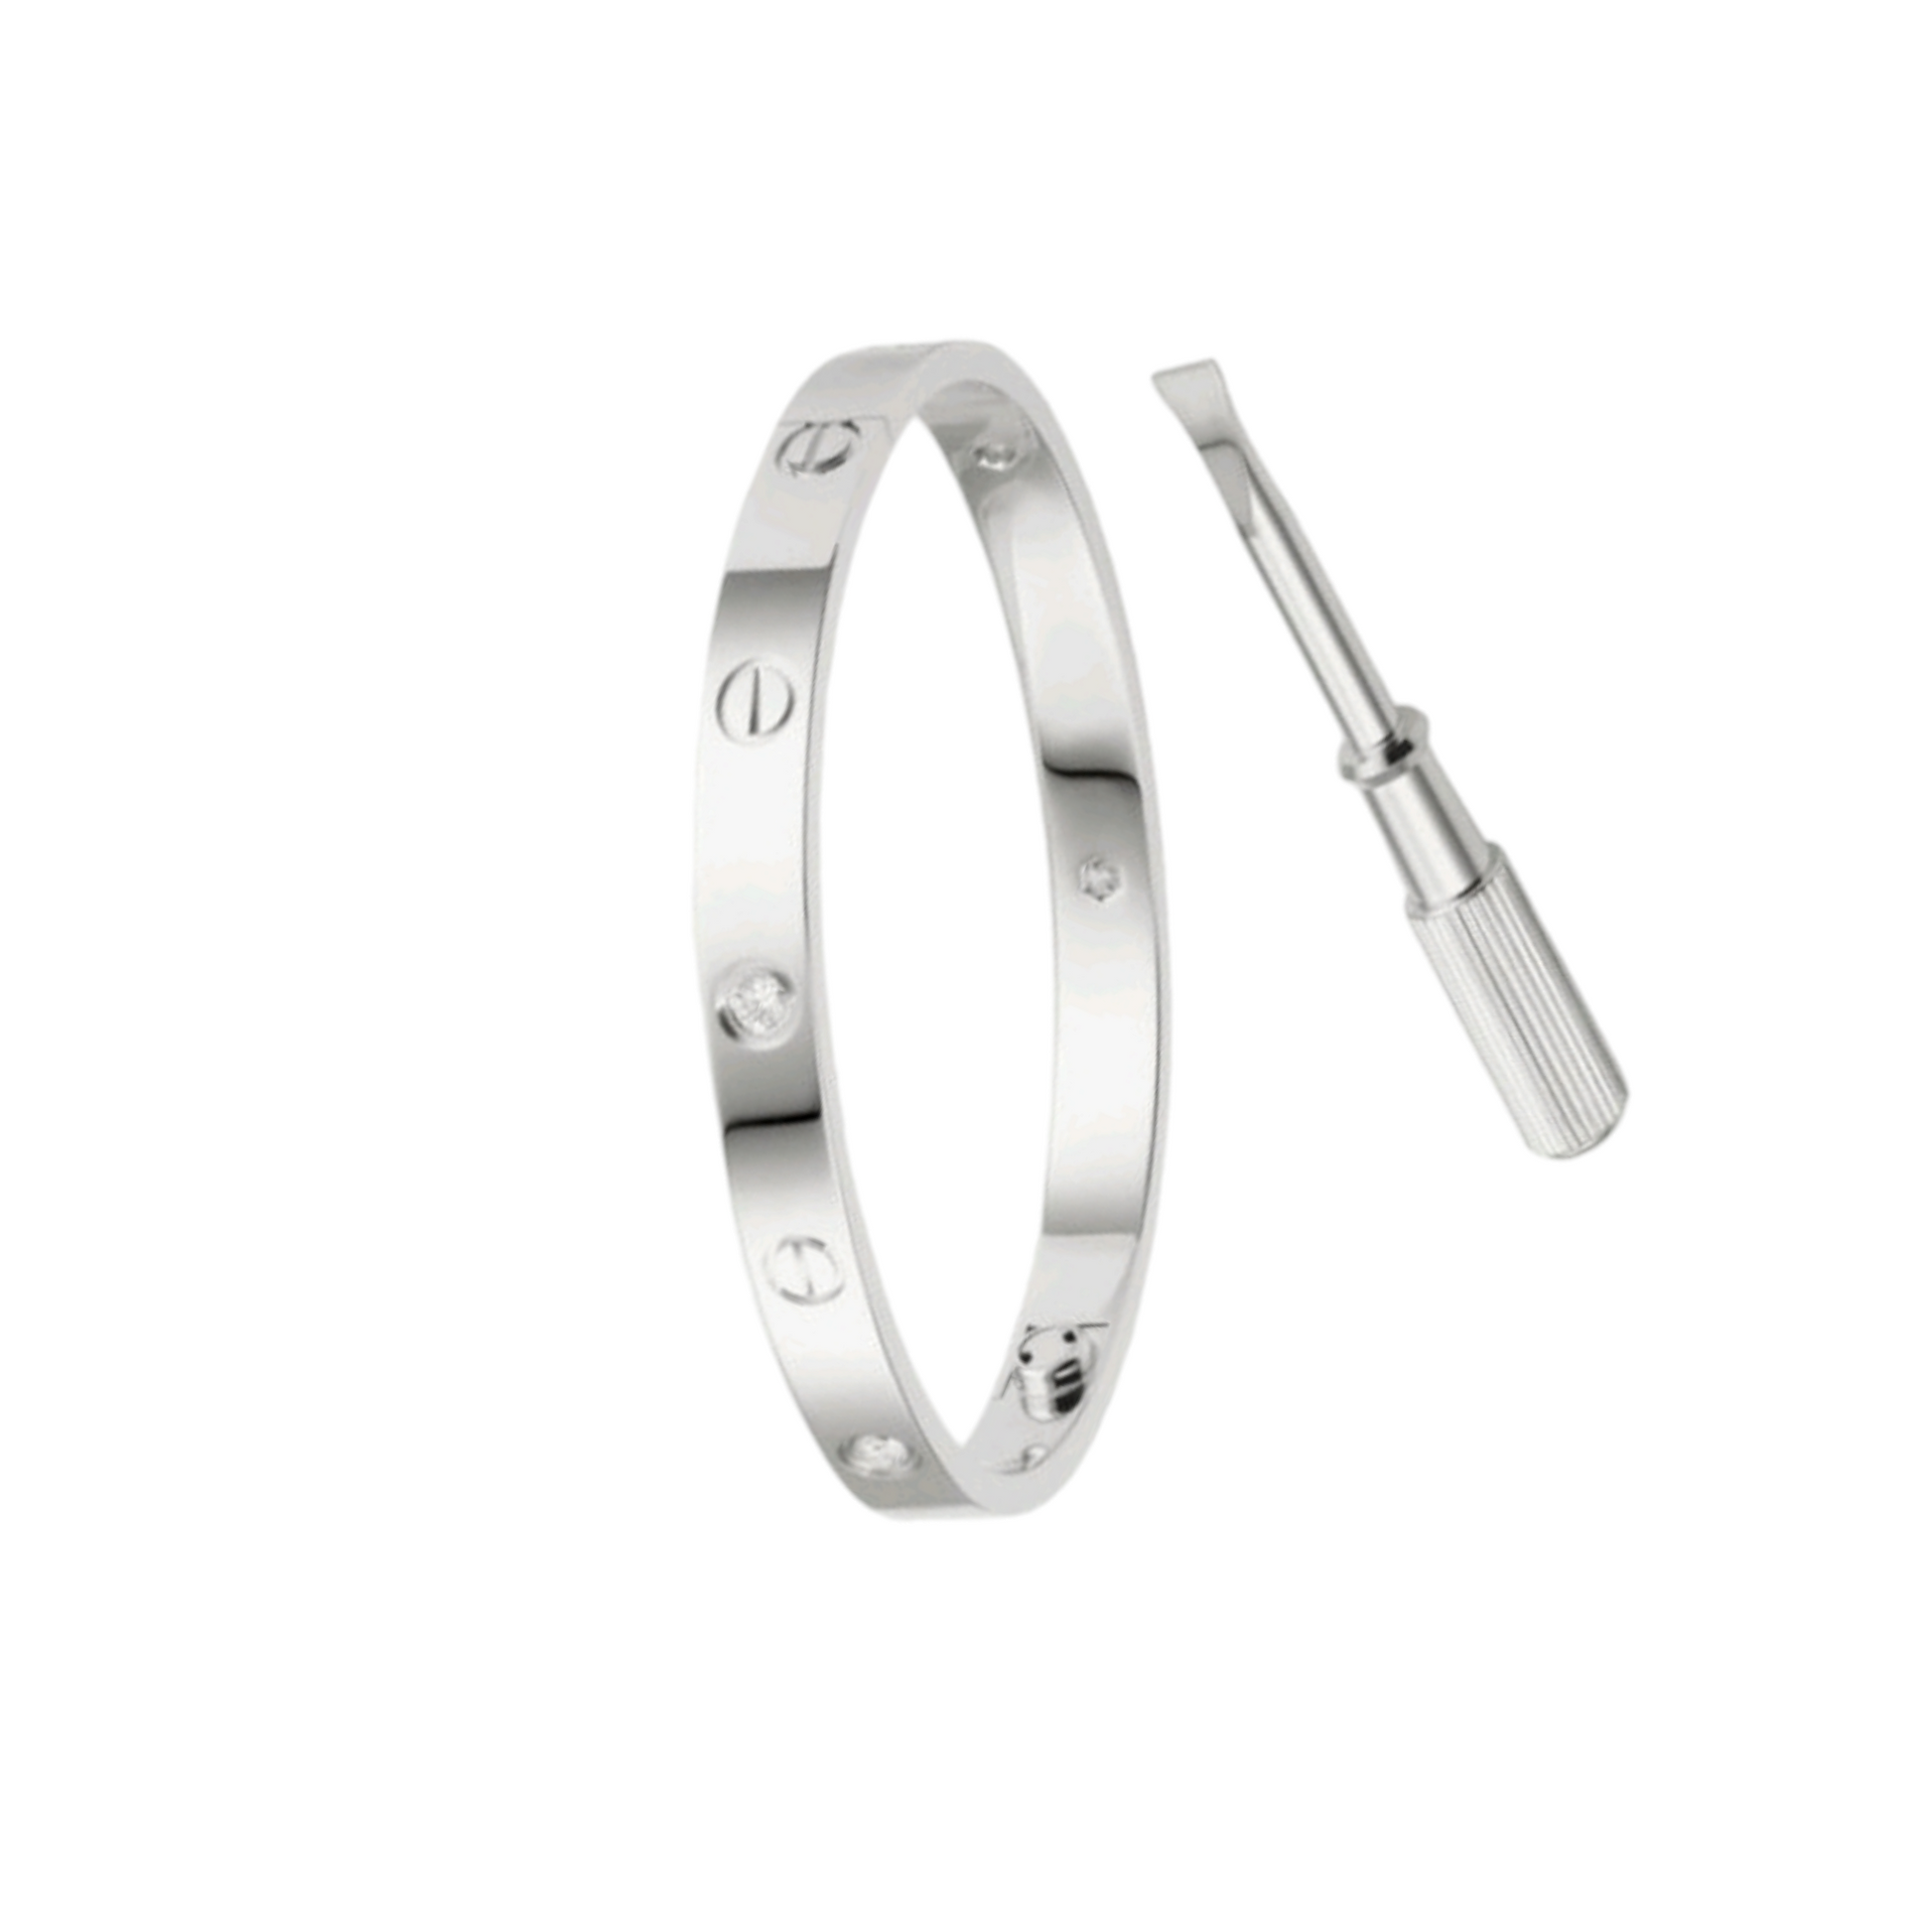 Bracelet for women in silver